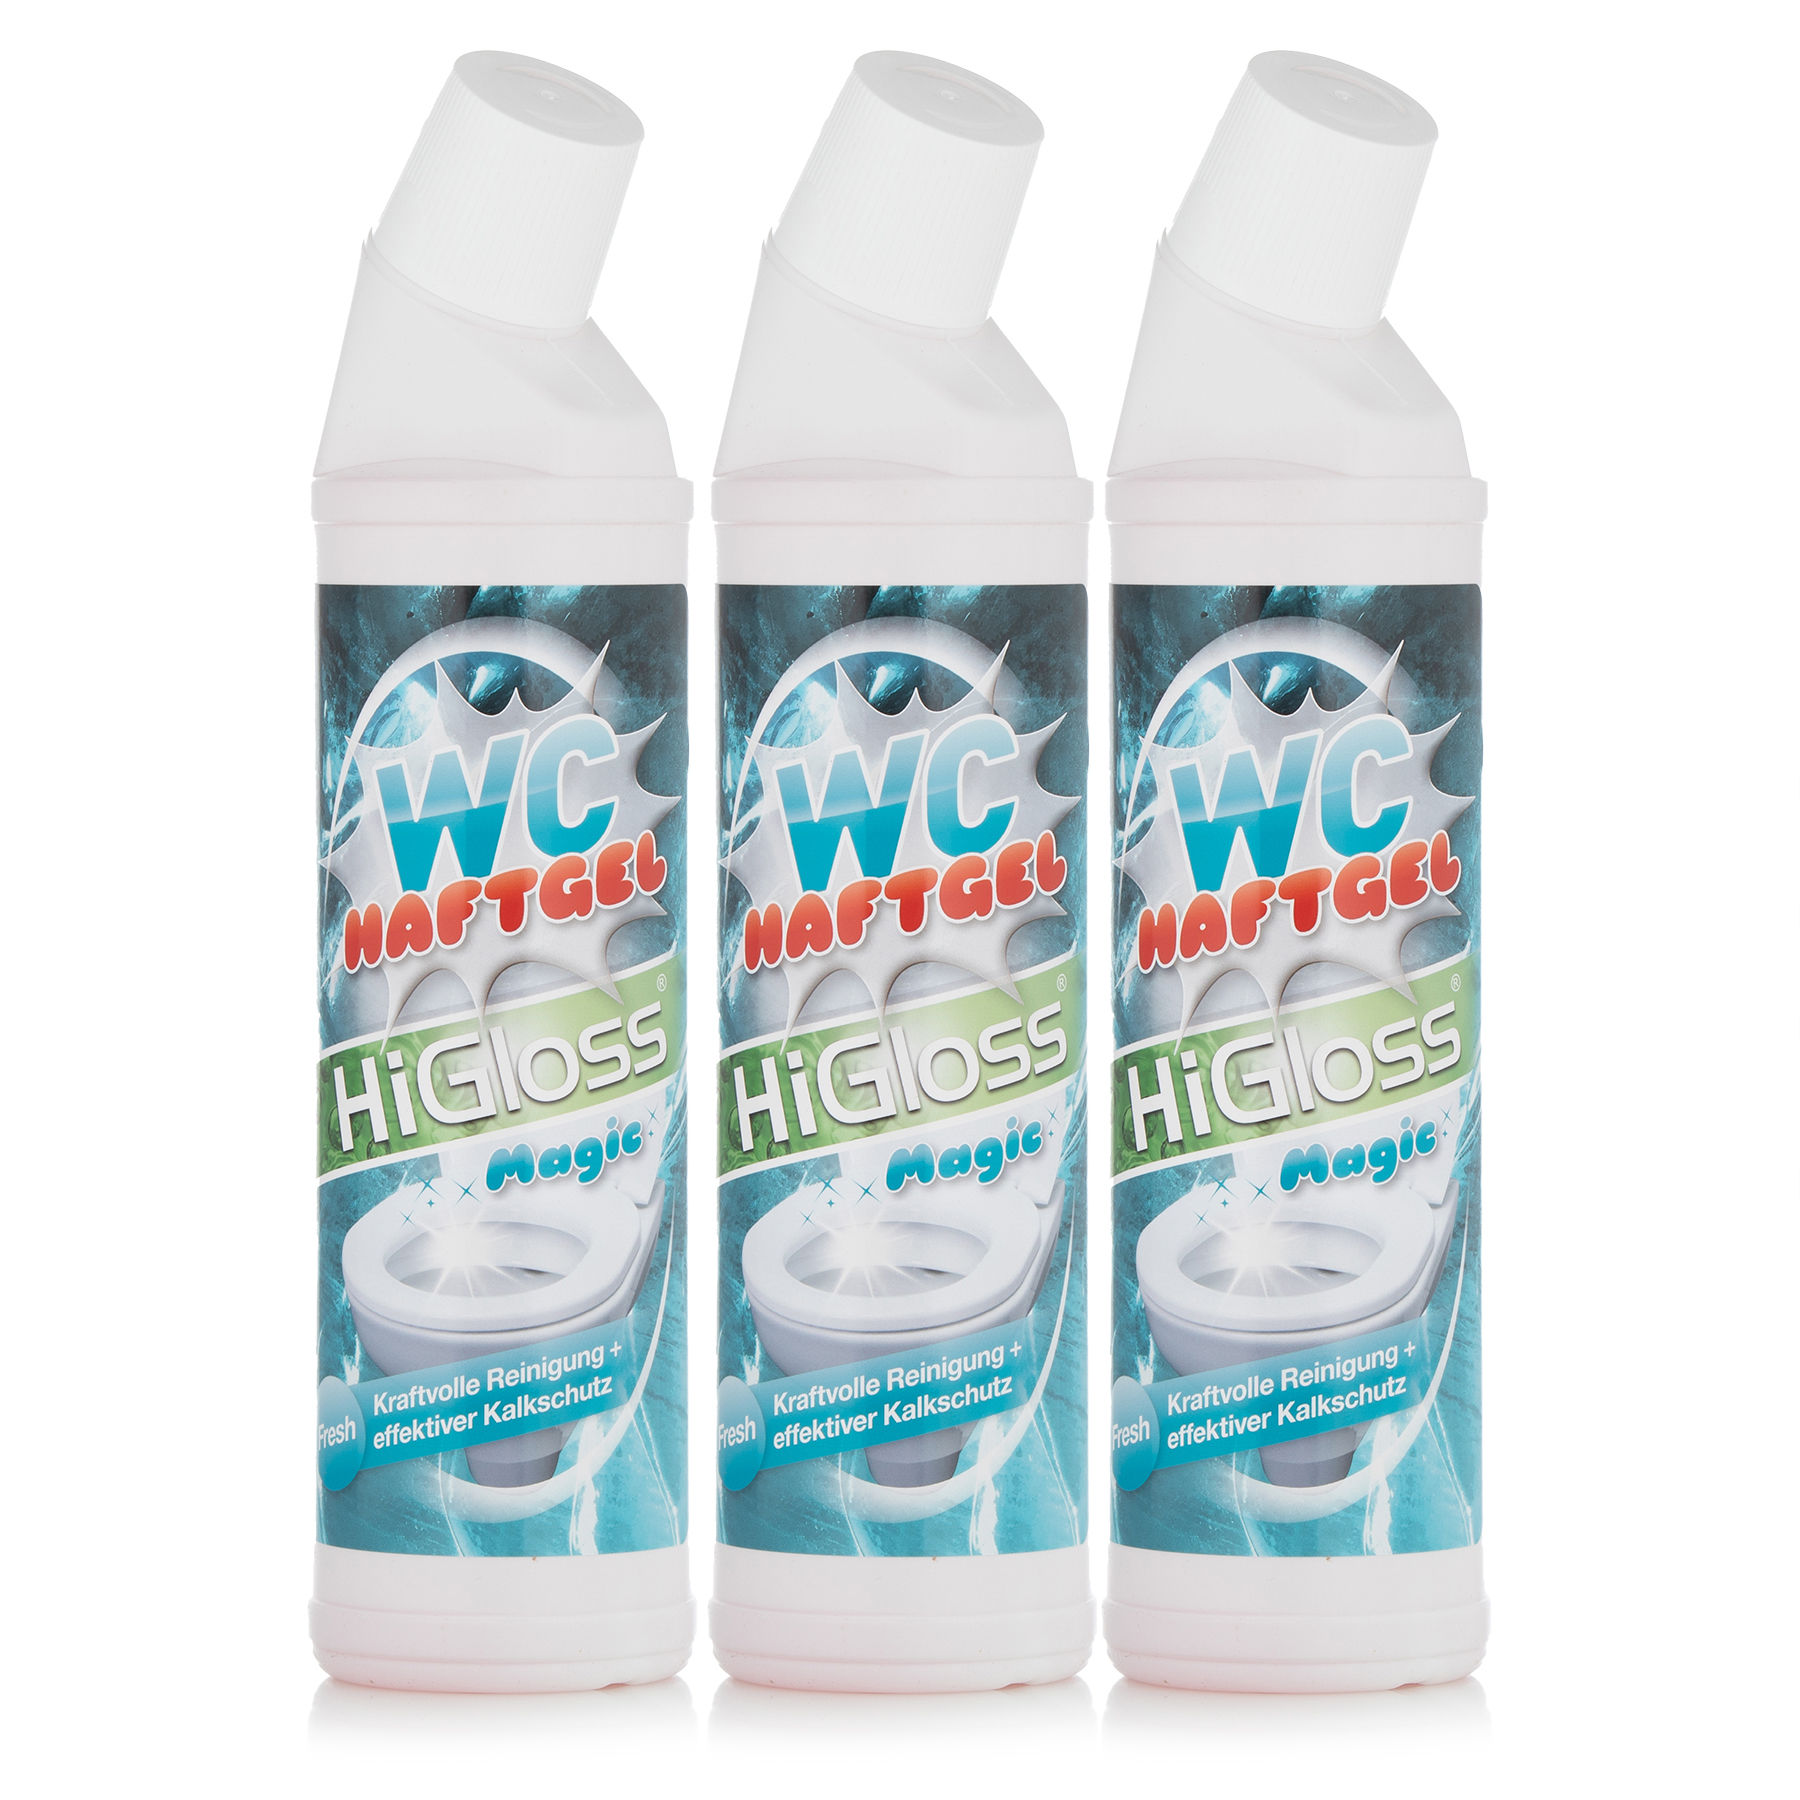 WC-Haftreiniger-Gel Trio - Produkte - HiGloss - Marken